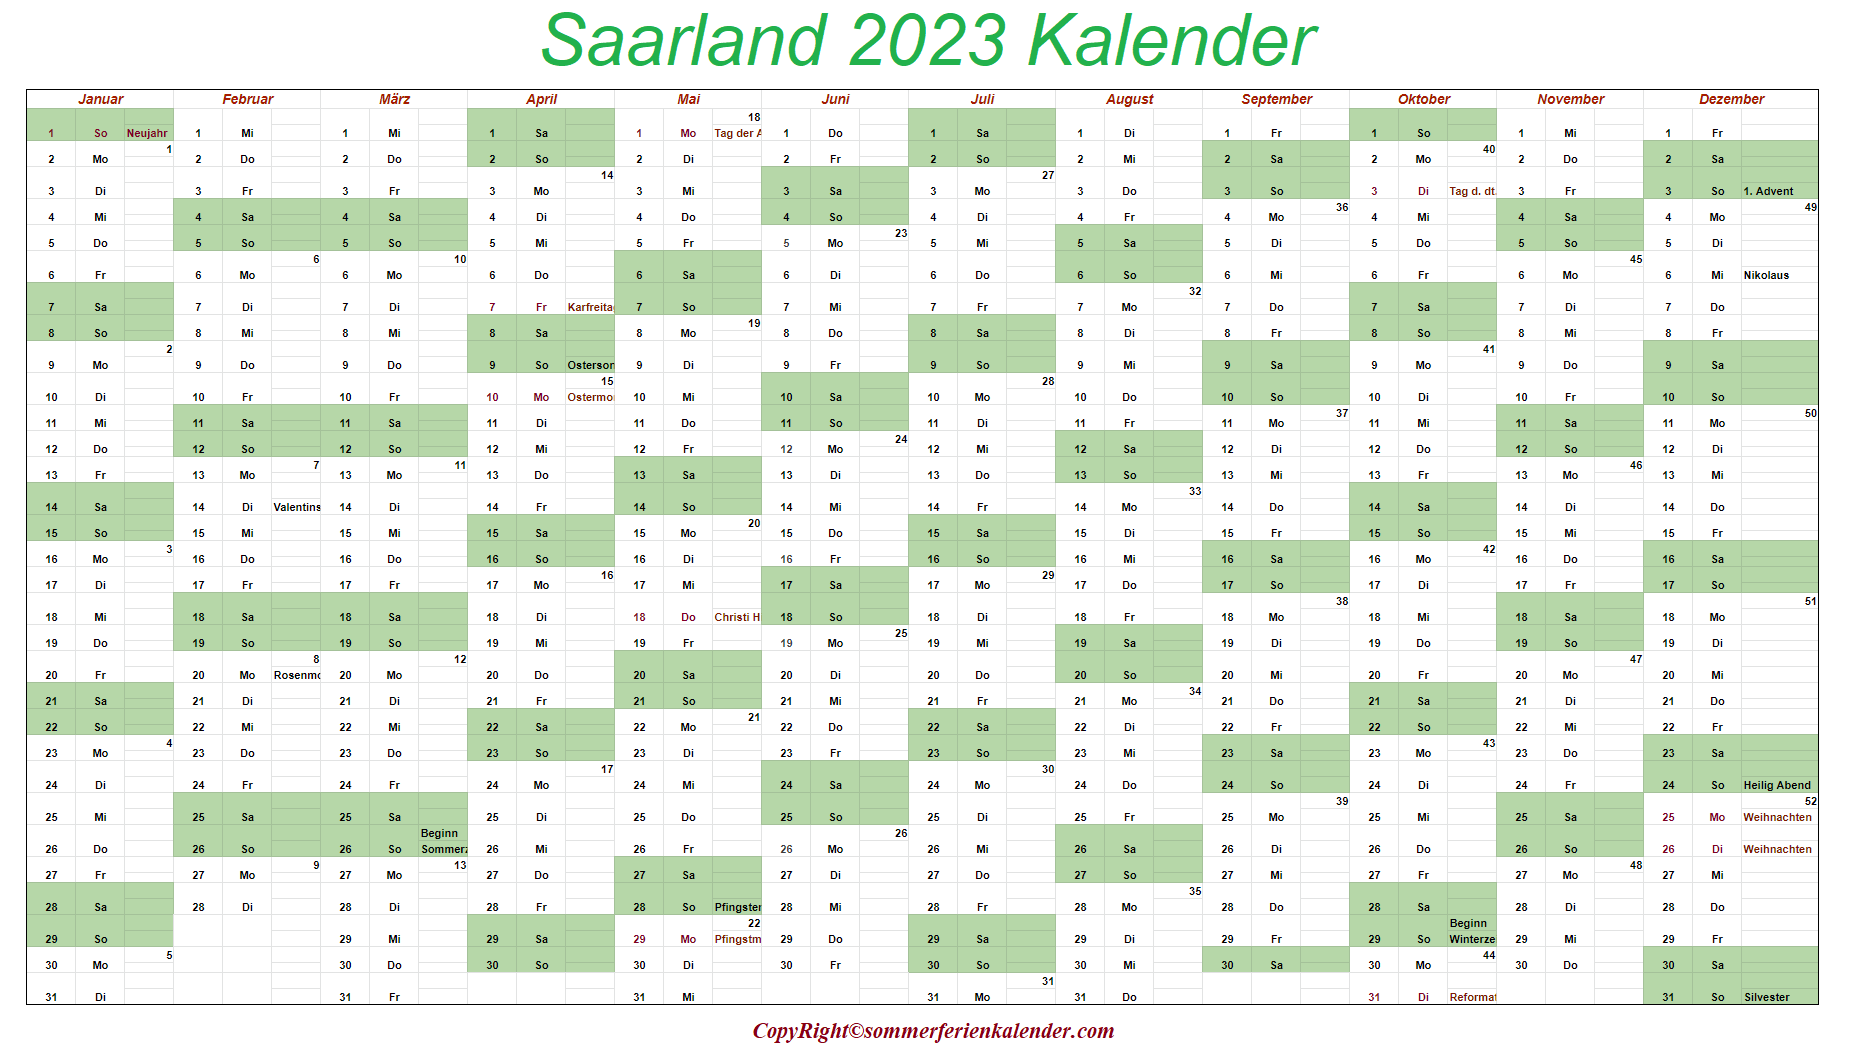 Saarland 2023 Kalender